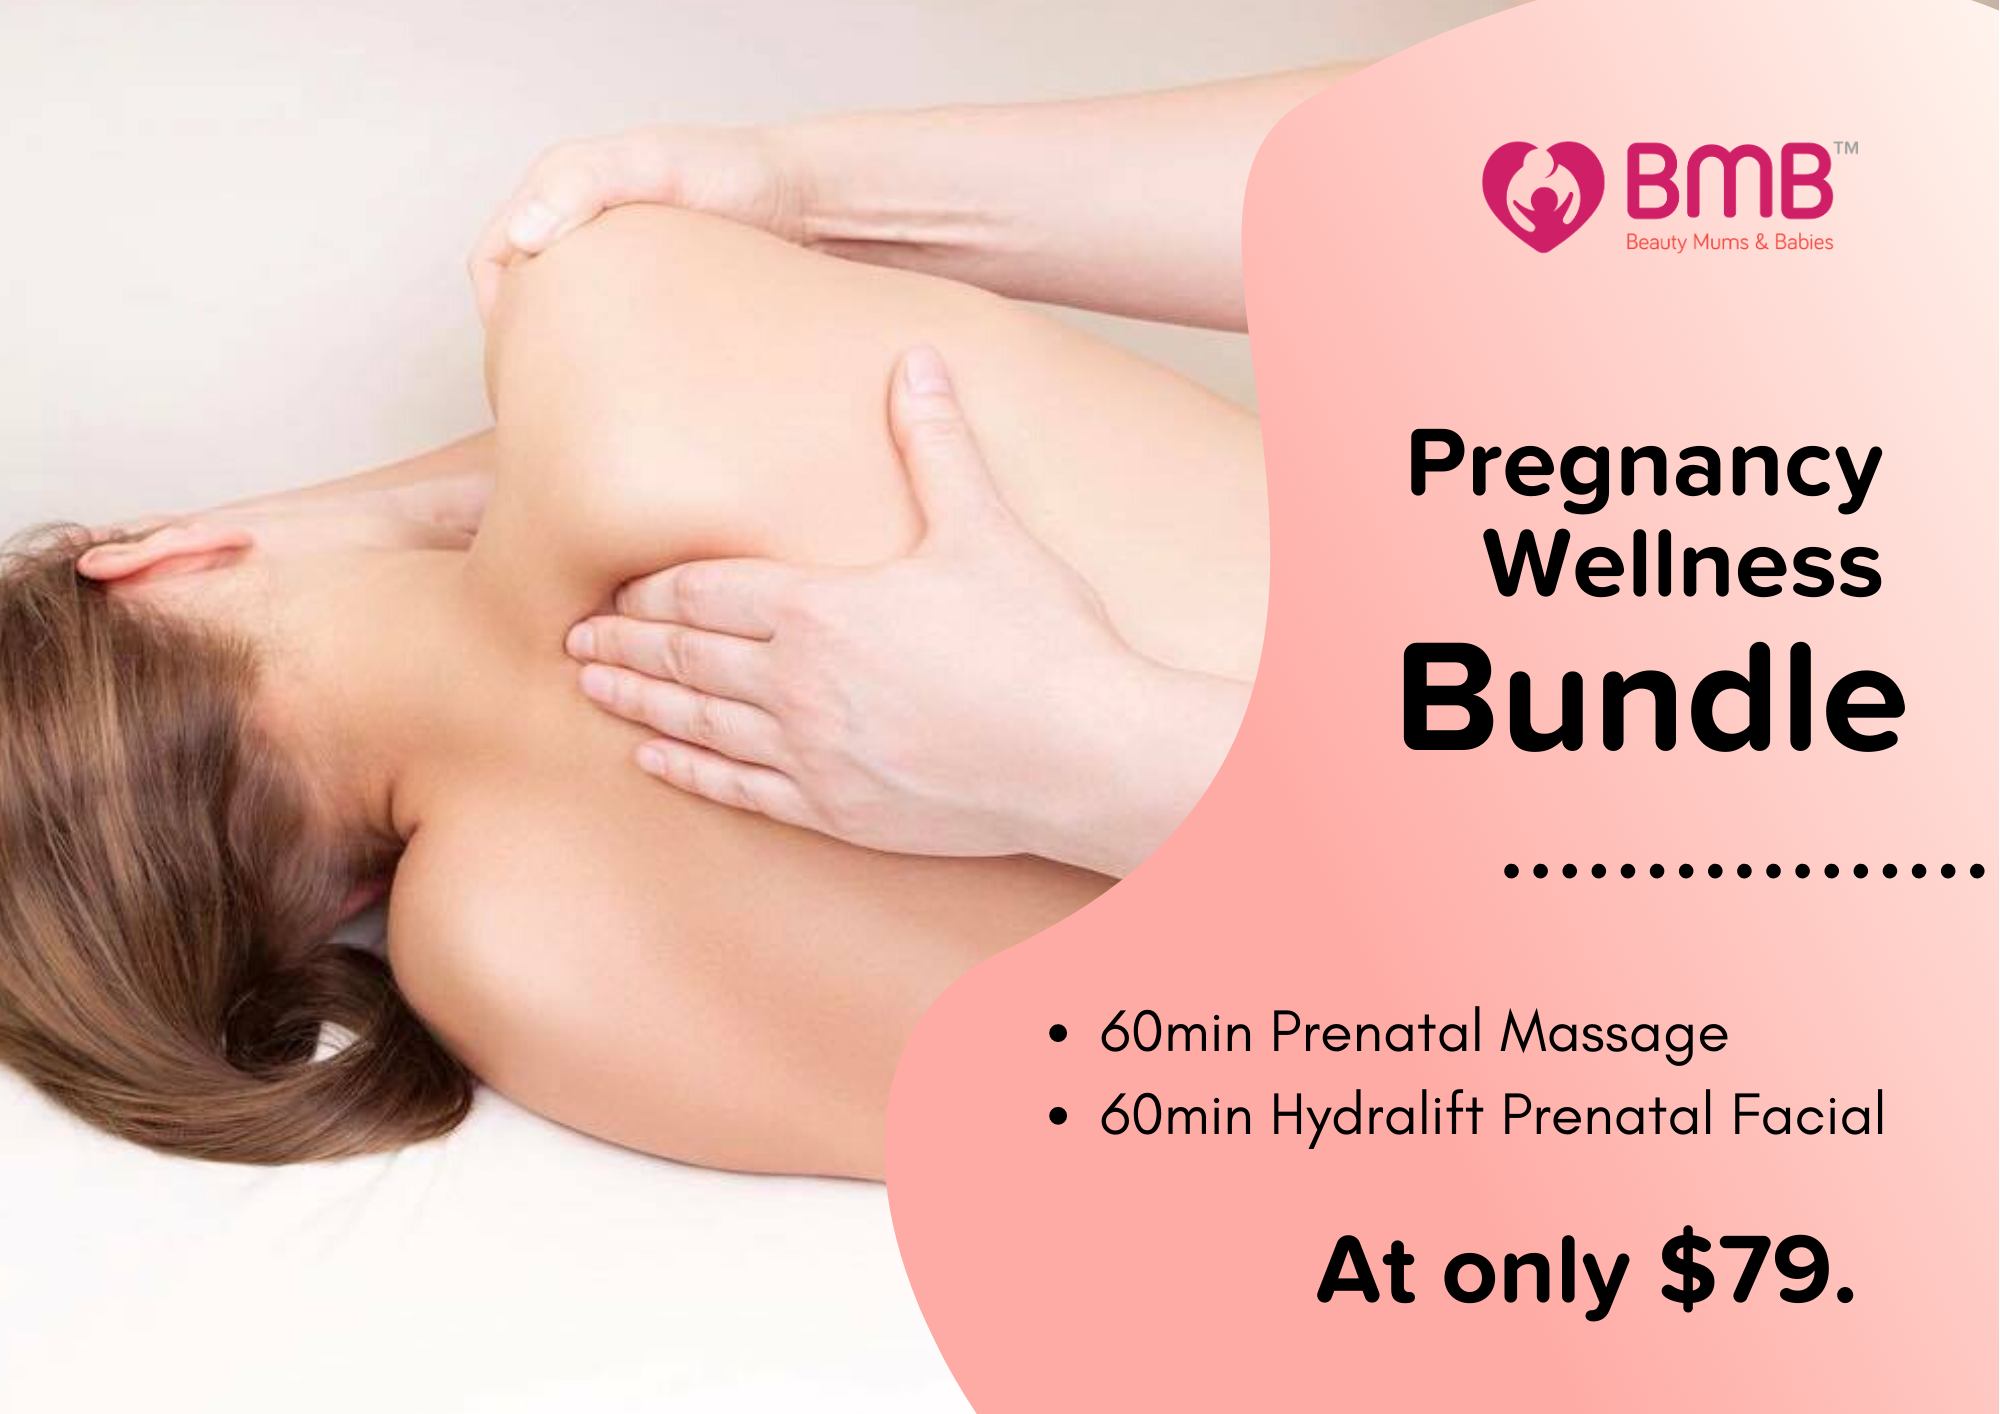 BMB First-Trial Pregnancy Wellness Bundle (60mins Prenatal Massage + 60mins Prenatal Hydralift Facial)